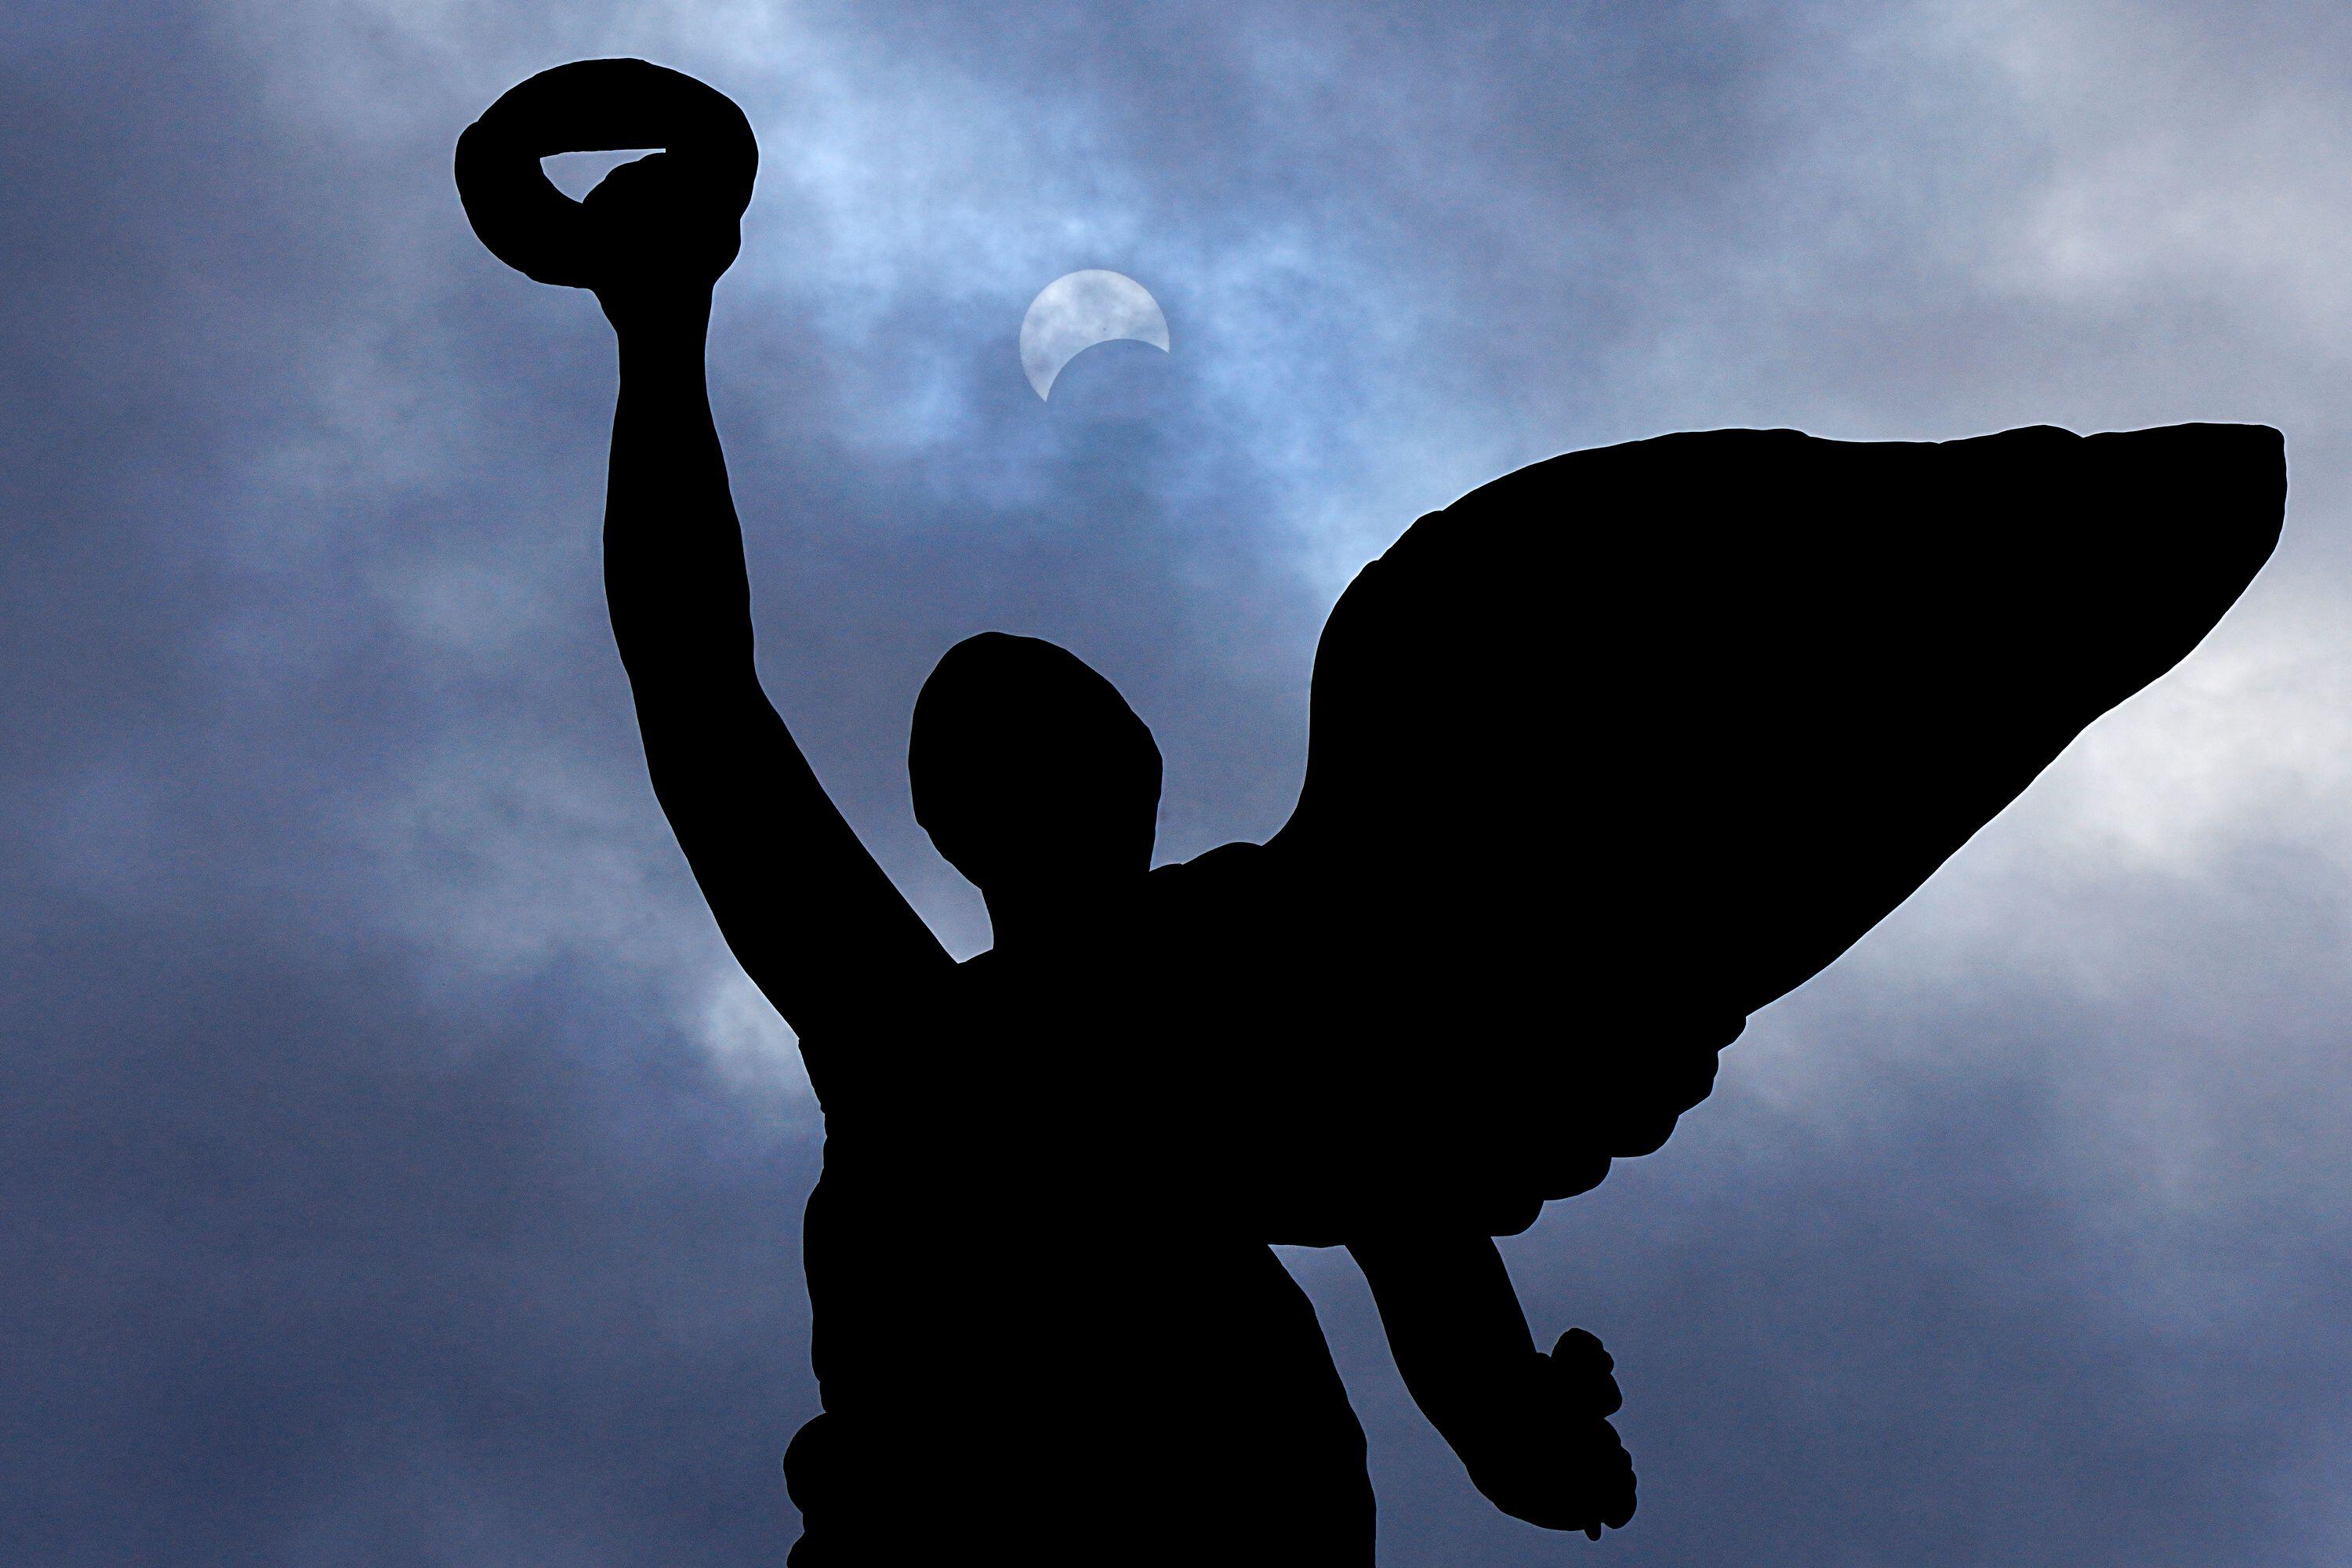 토론토 프린스 게이트 위의 천사 프레임에서 개기 일식이 진행되는 동안 달이 태양 앞으로 나아갑니다.